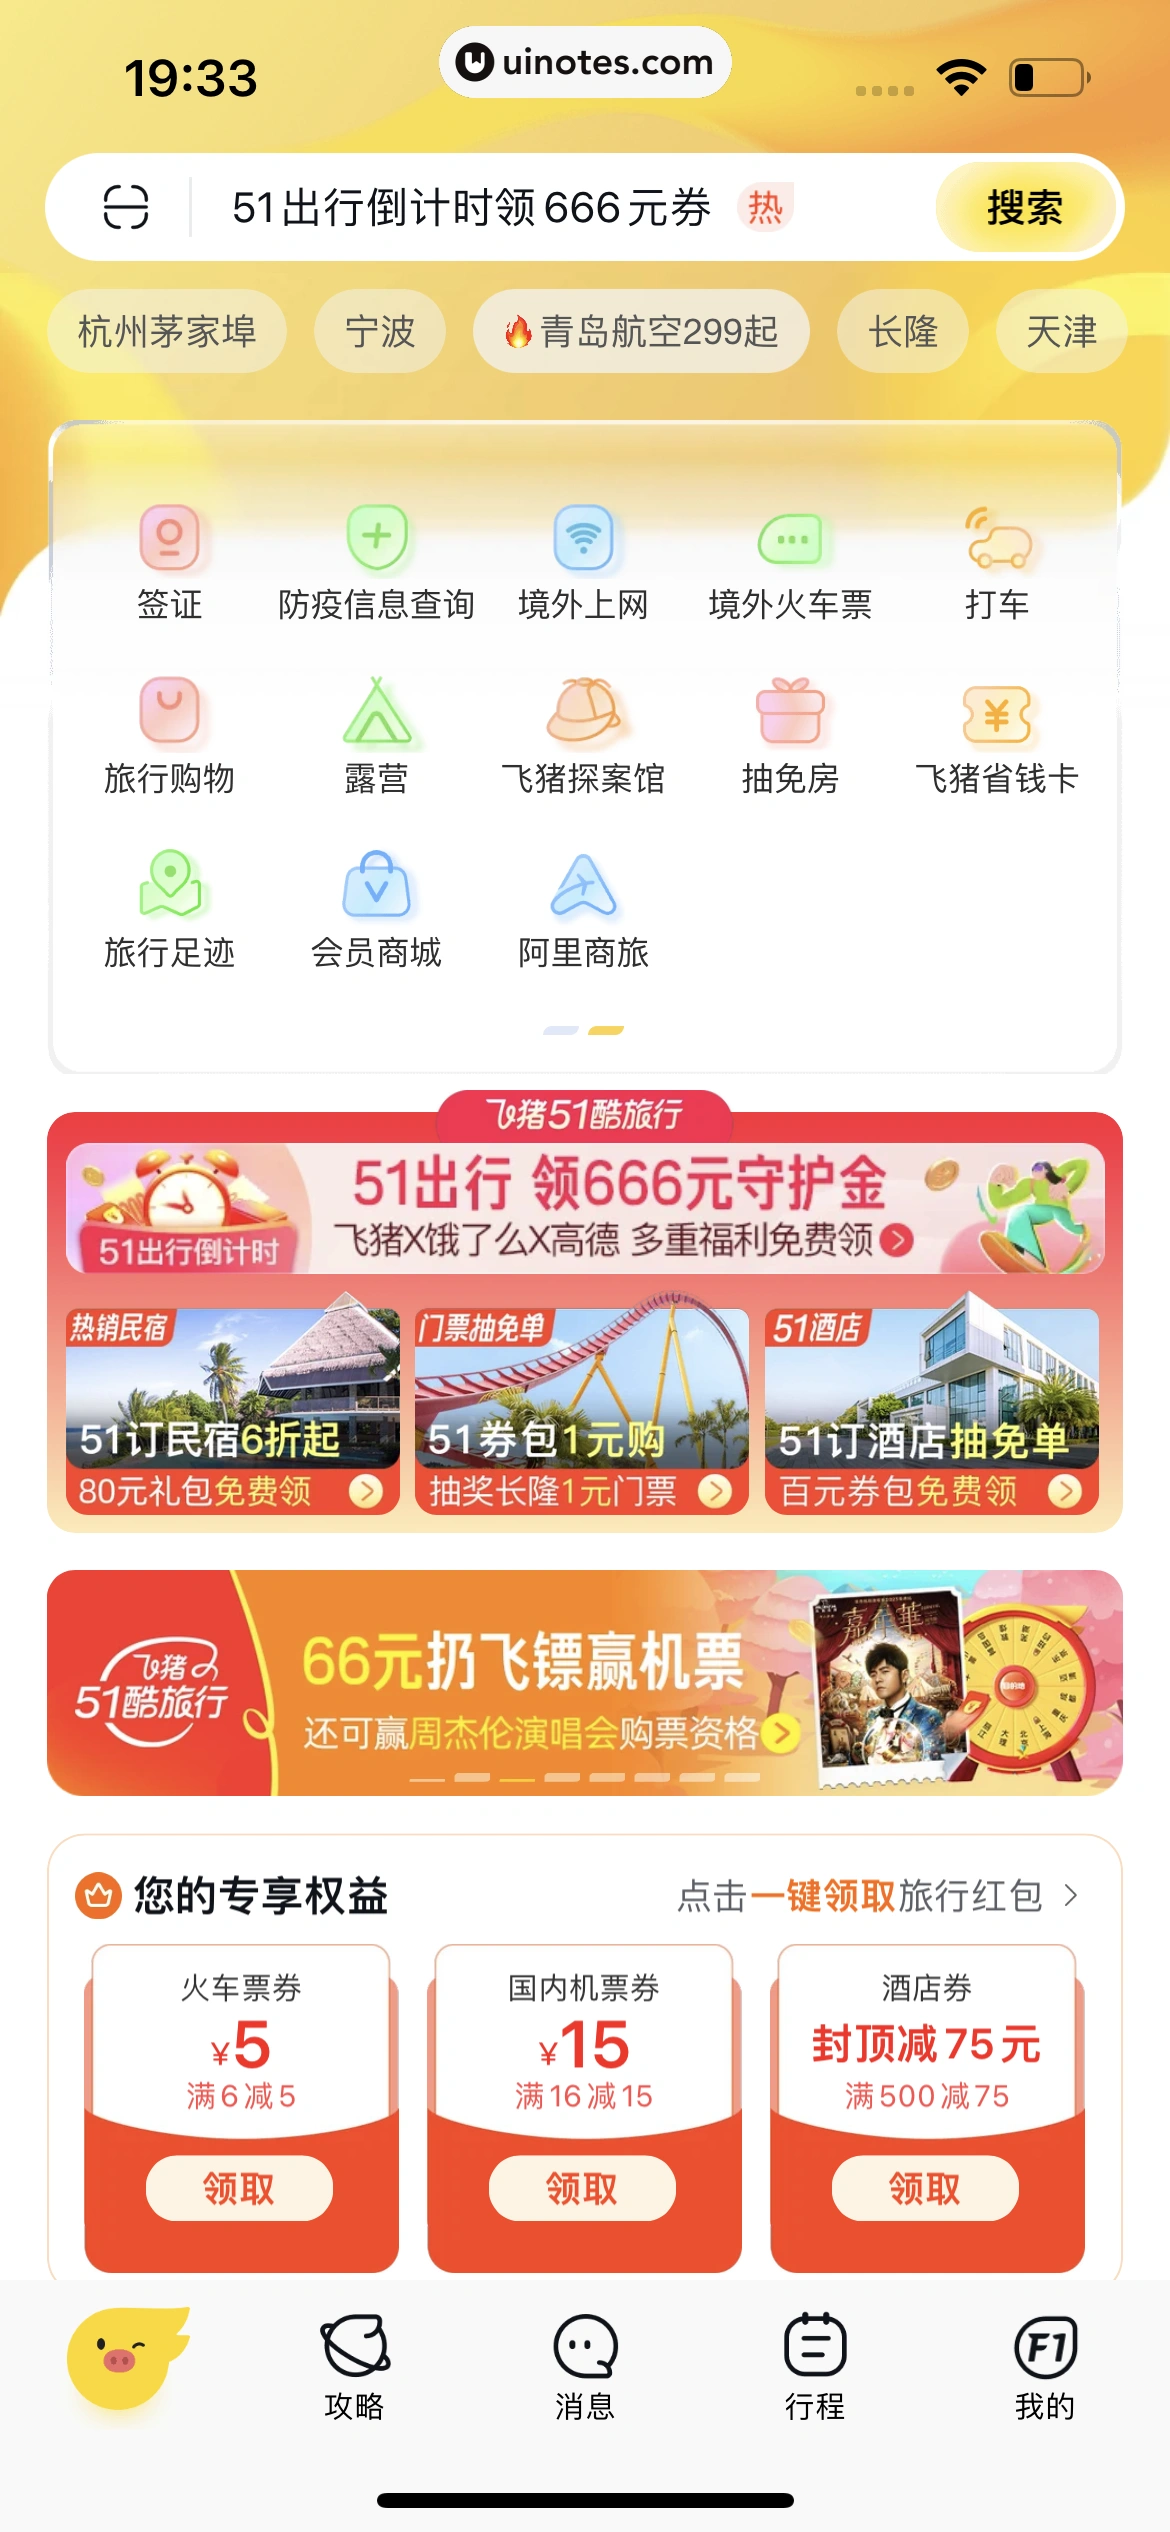 飞猪旅行 App 截图 875 - UI Notes